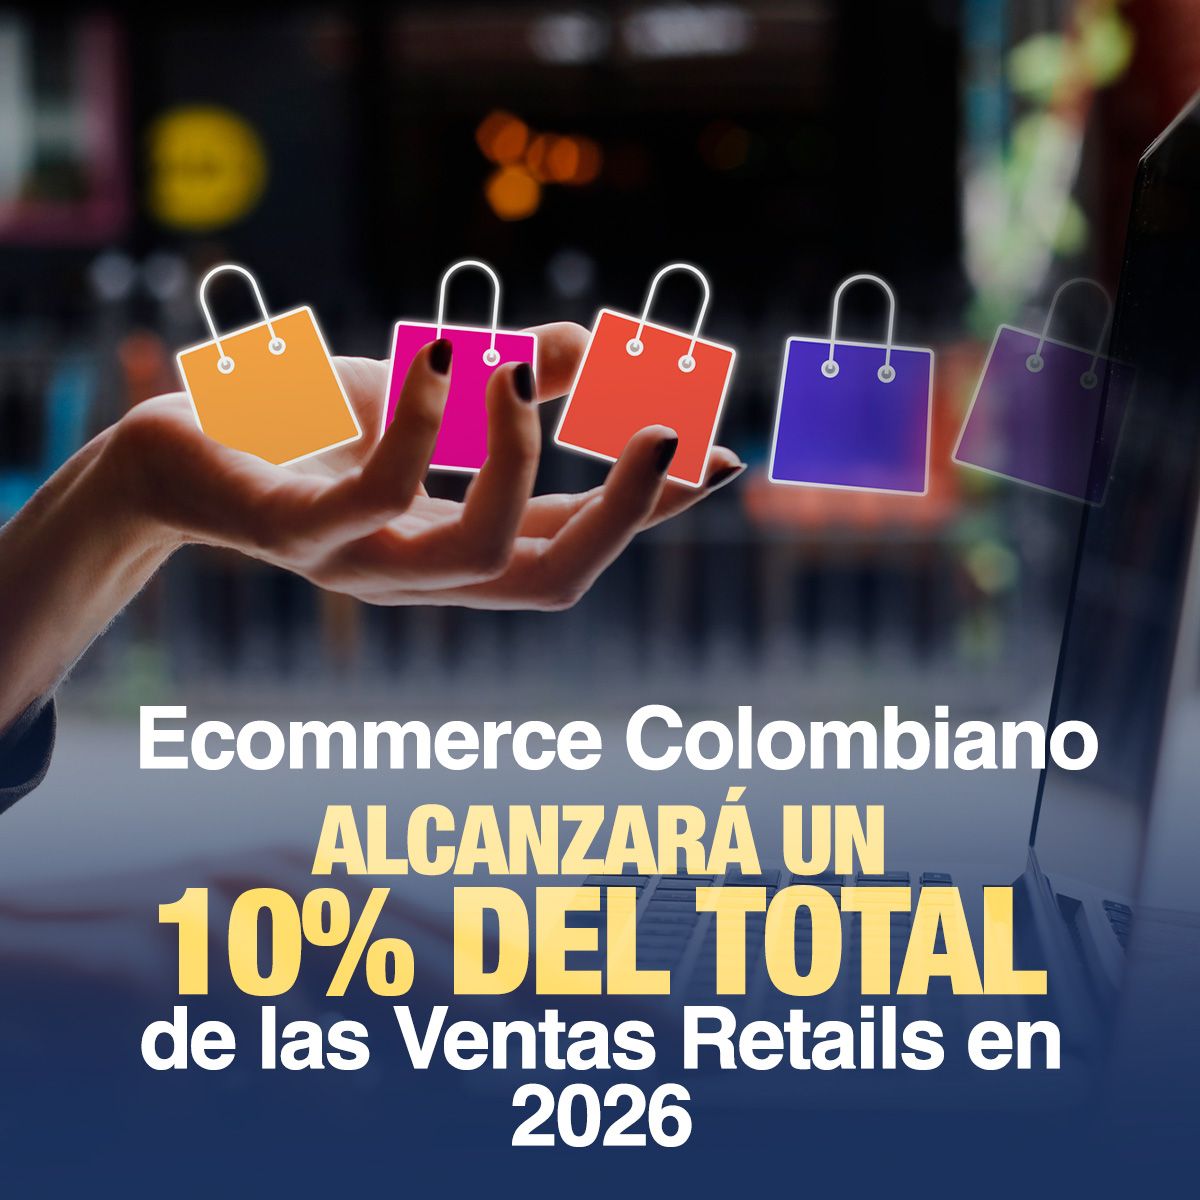 Ecommerce Colombiano Alcanzará un 10% del Total de las Ventas Retails en 2026